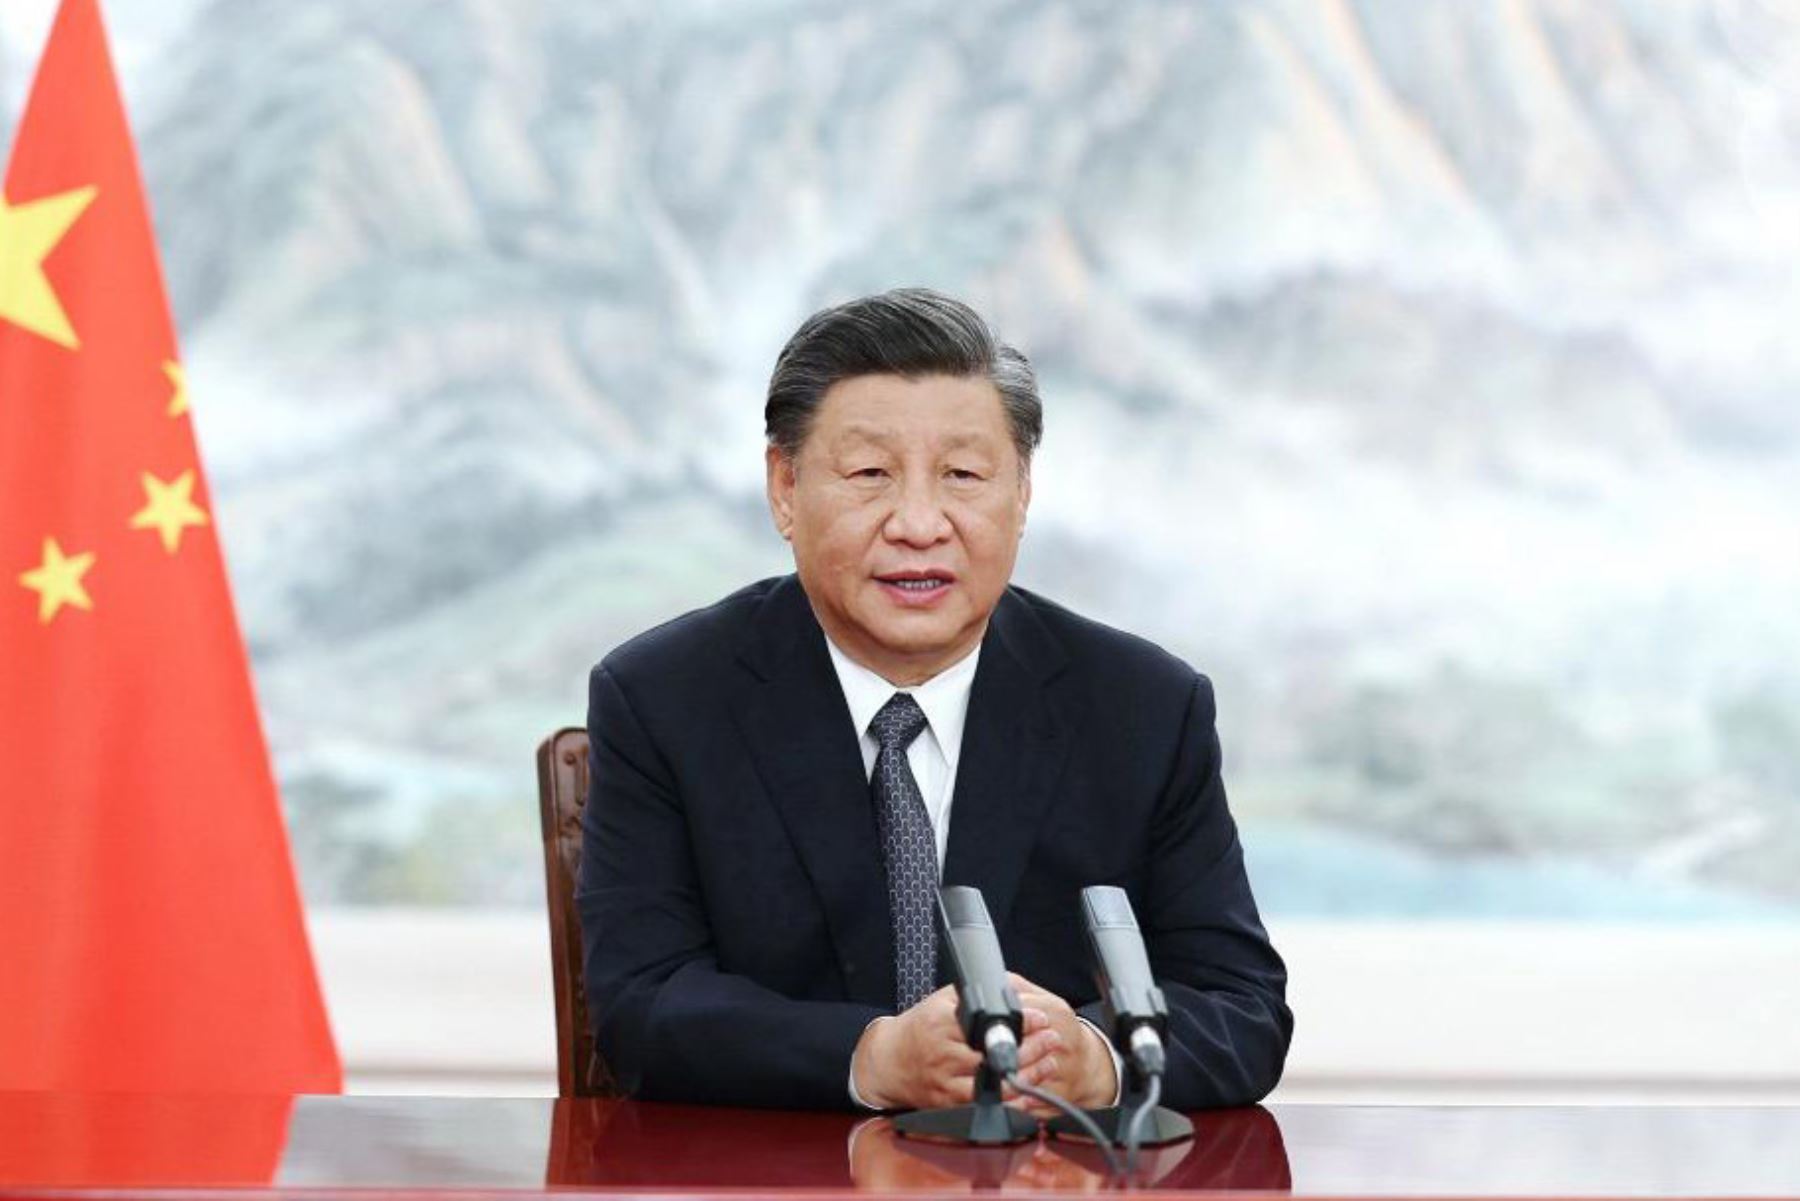 Foro BRICS: Xi Jinpin pide solidaridad y apertura para la paz y el desarrollo [video]